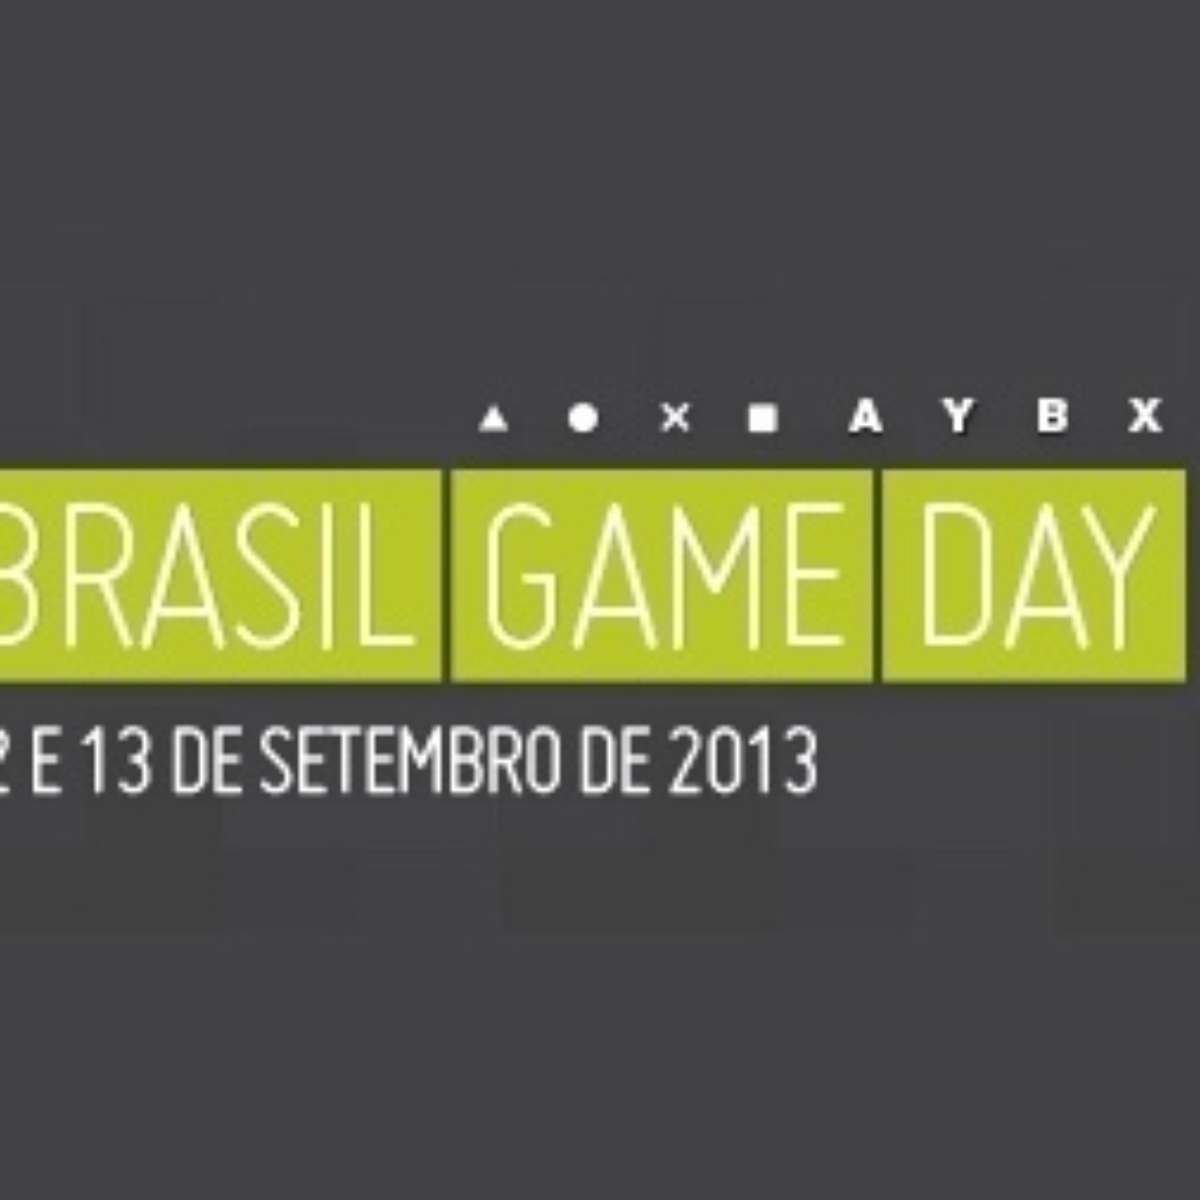 Acigames Associação dos jogos eletrônicos do Brasil